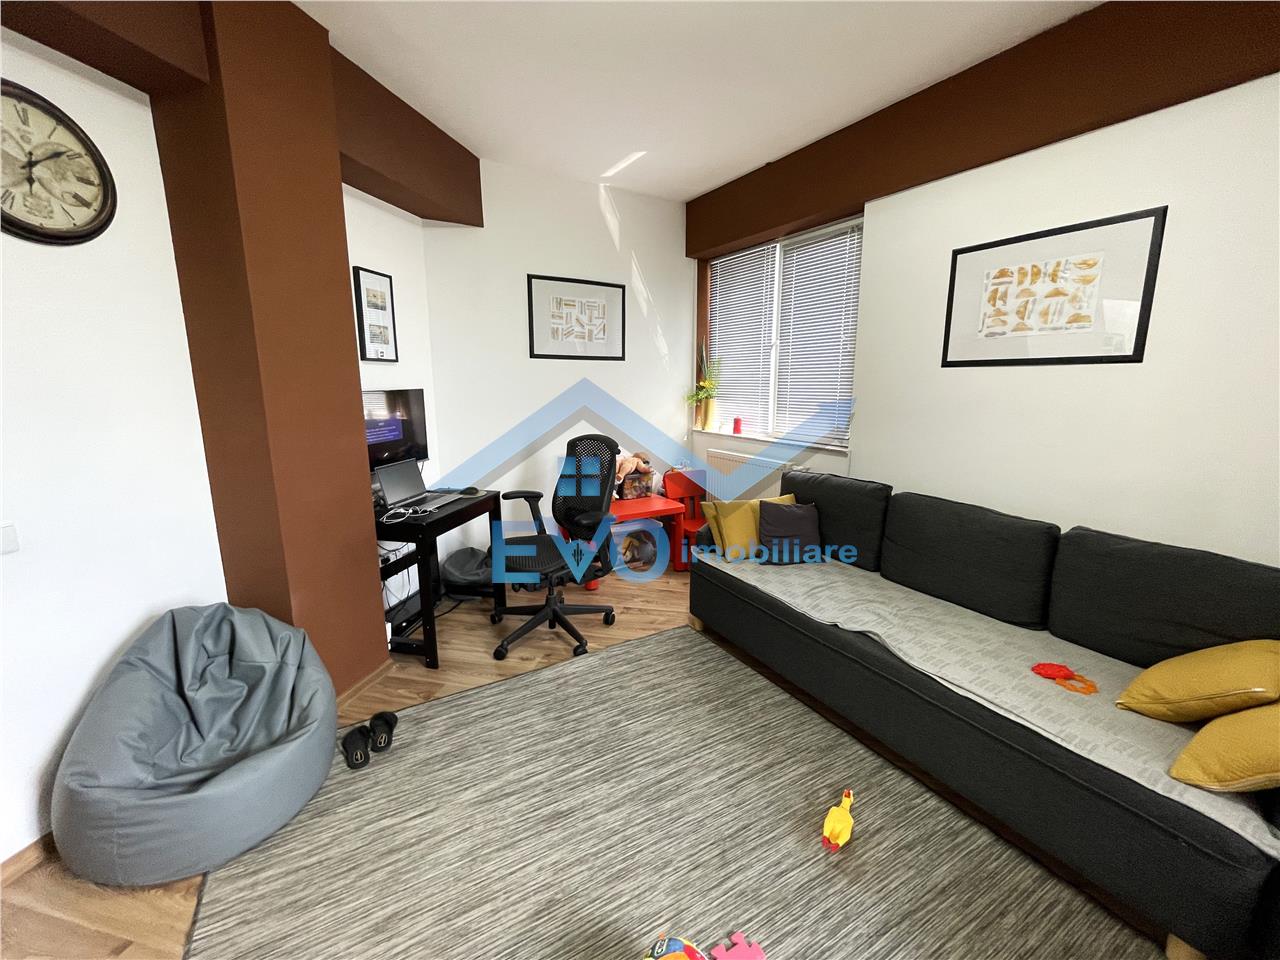 IDEAL RESIDENCE Apartament cu 2 camere complet mobilat, 54 mp, decomandat